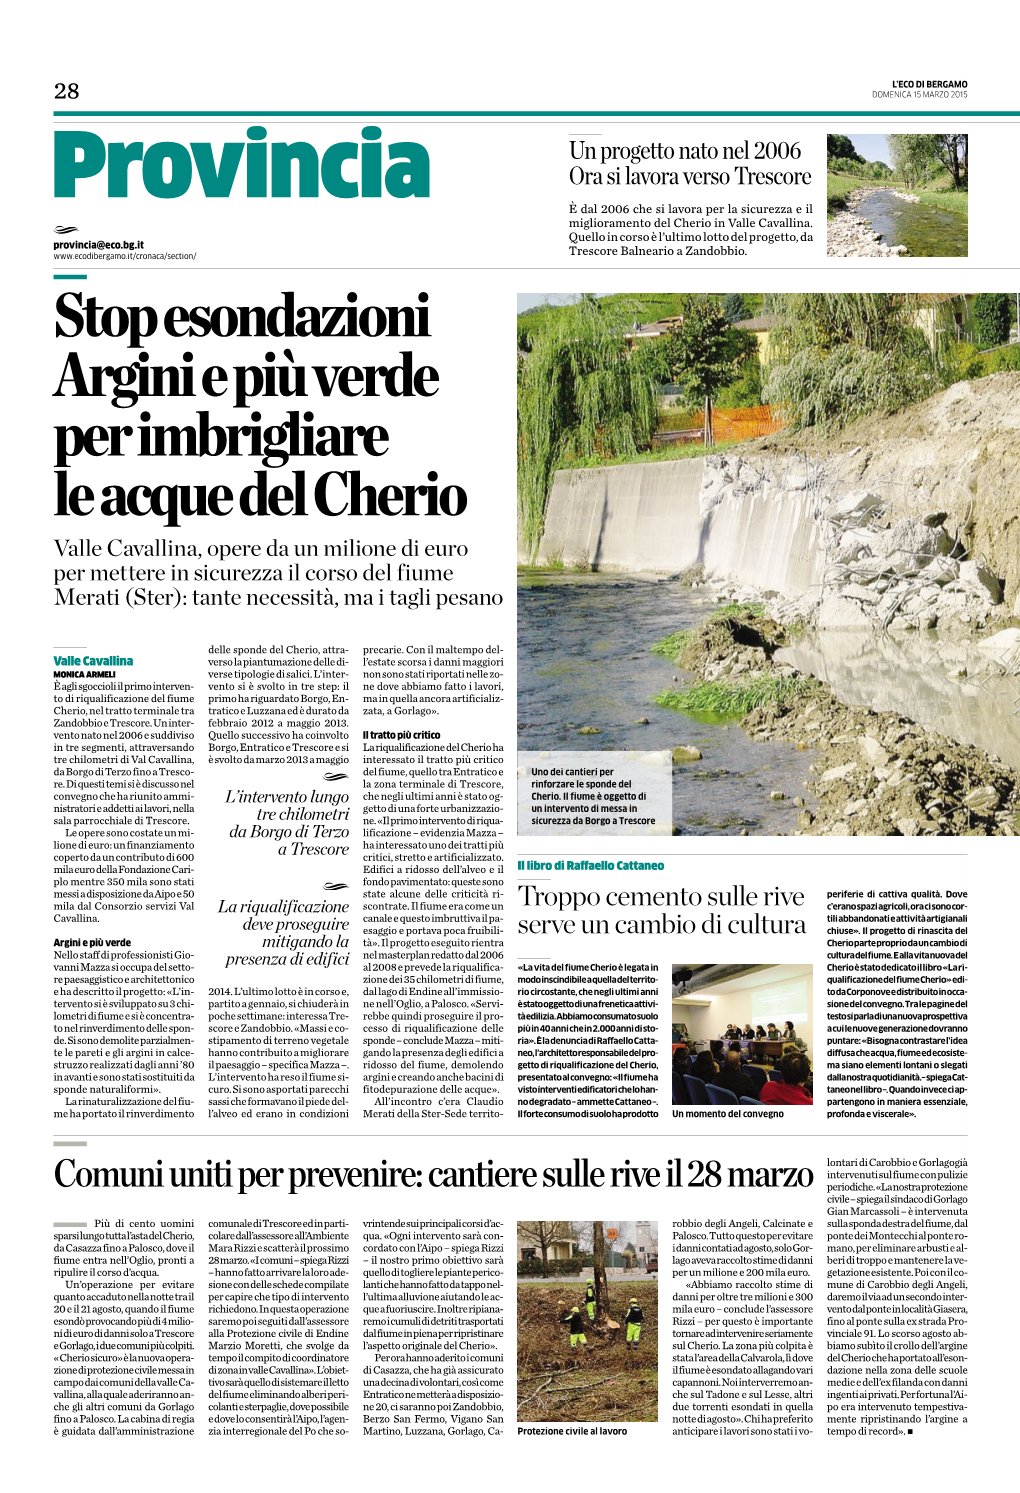 Stop Esondazioni Argini E Più Verde Per Imbrigliare Le Acque Del Cherio